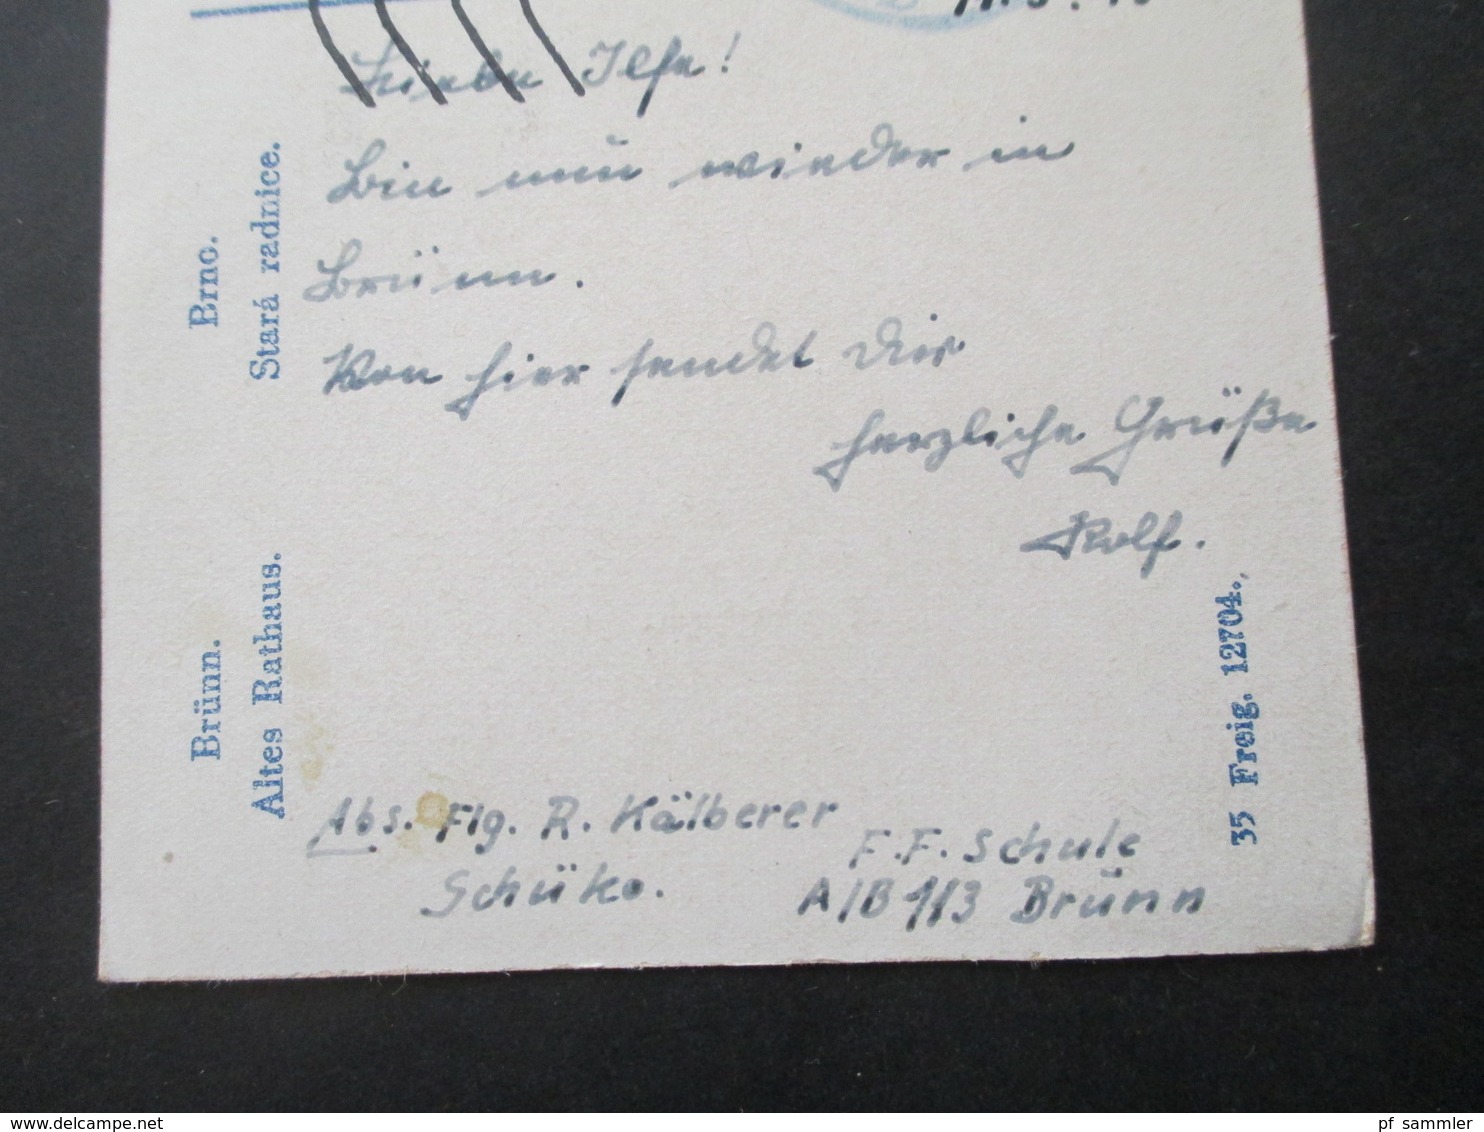 Böhmen Und Mähren 1943 Flugzeugführerschule 113 Schülerkomp. Absender Flieger In Brünn Feldpost AK Brünn Altes Rathaus - Lettres & Documents